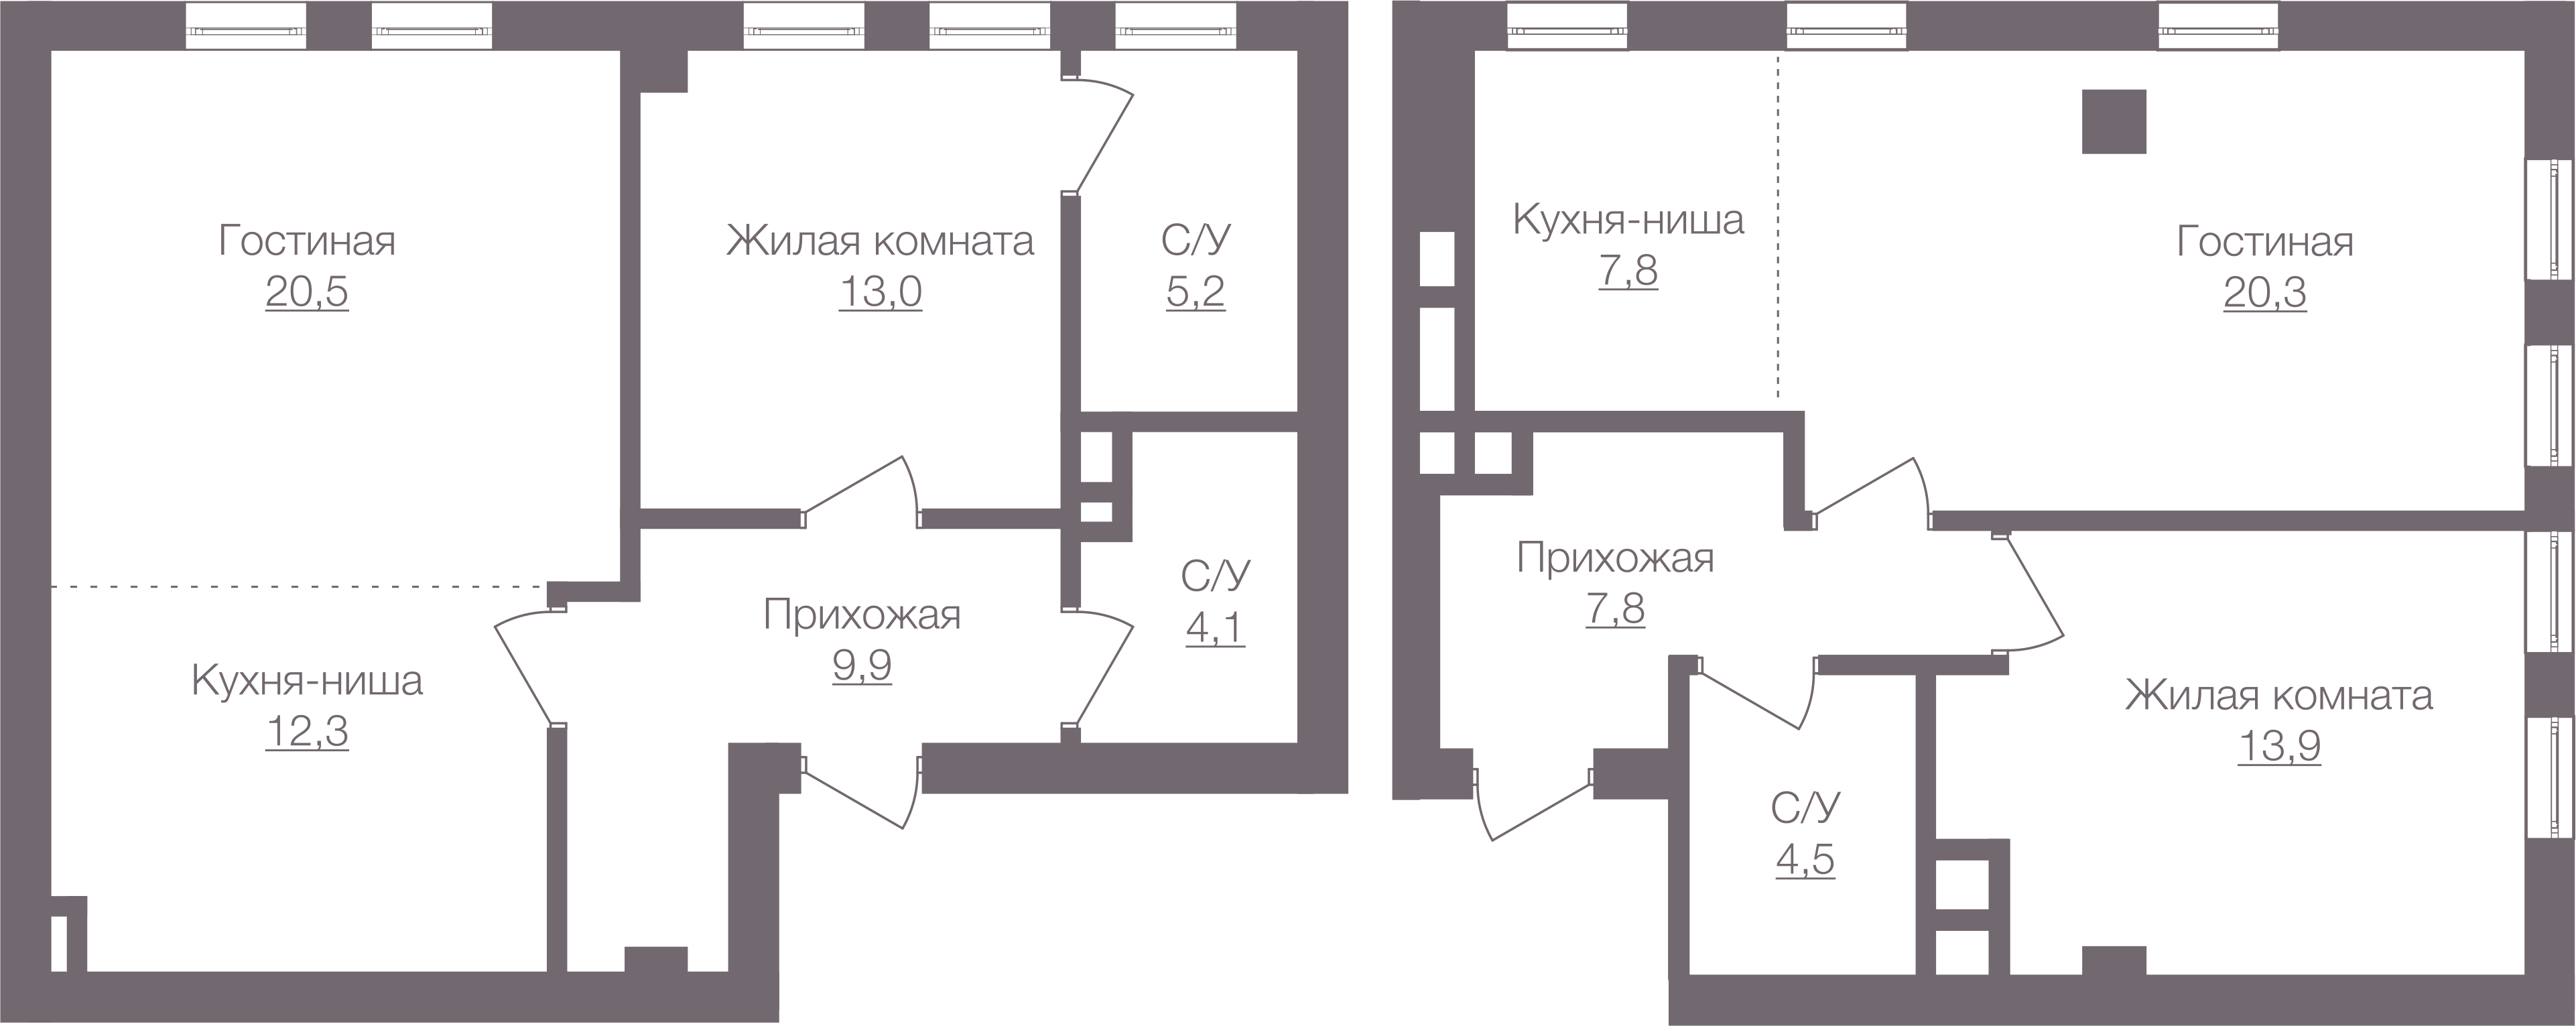 Квартиры до объединения | Аналогичные для 5 этаже: 554 и 555